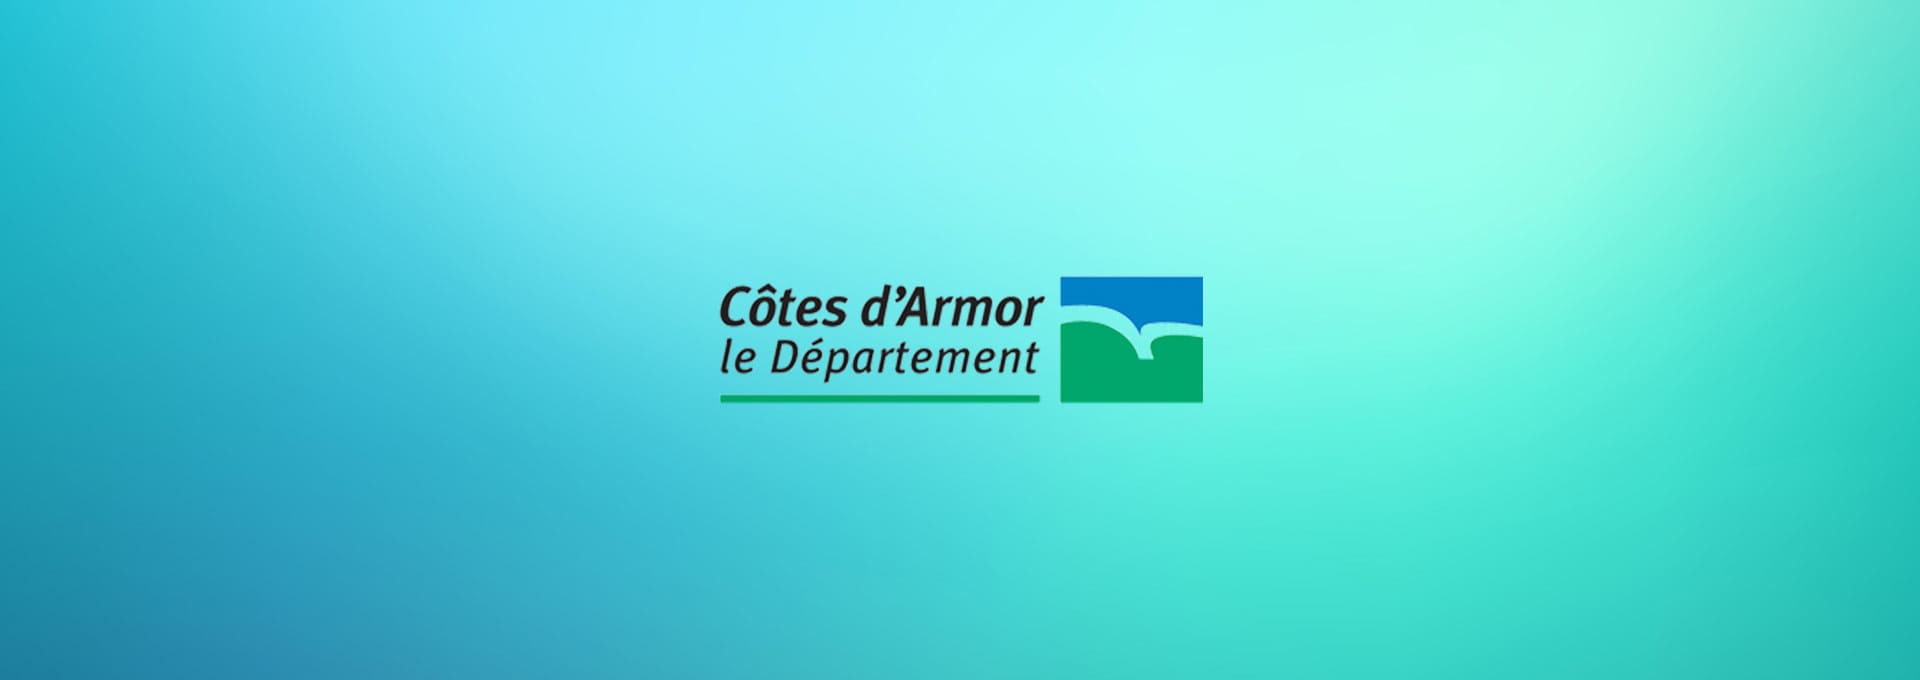 Actualités Témoignages - Département des Côtes d'Armor